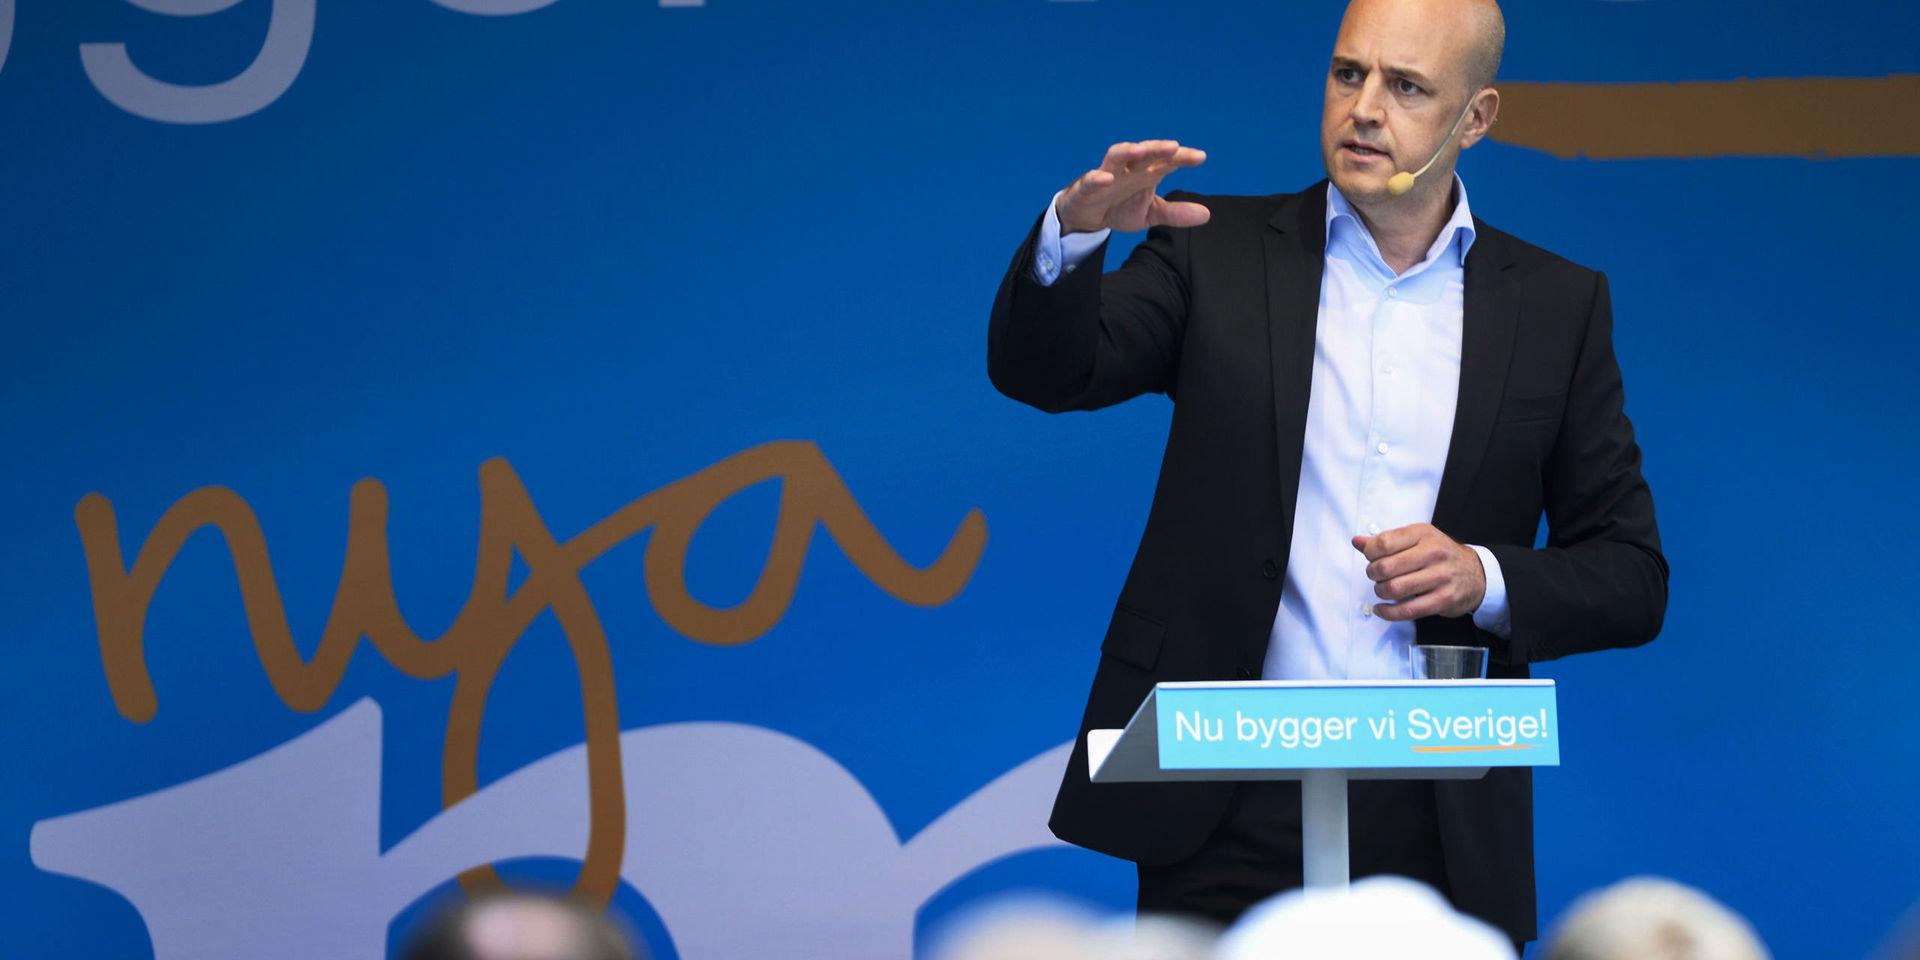 Migrationspolitik. Det har gått fem år sedan Fredrik Reinfeldts uppmaning om öppna hjärtan.